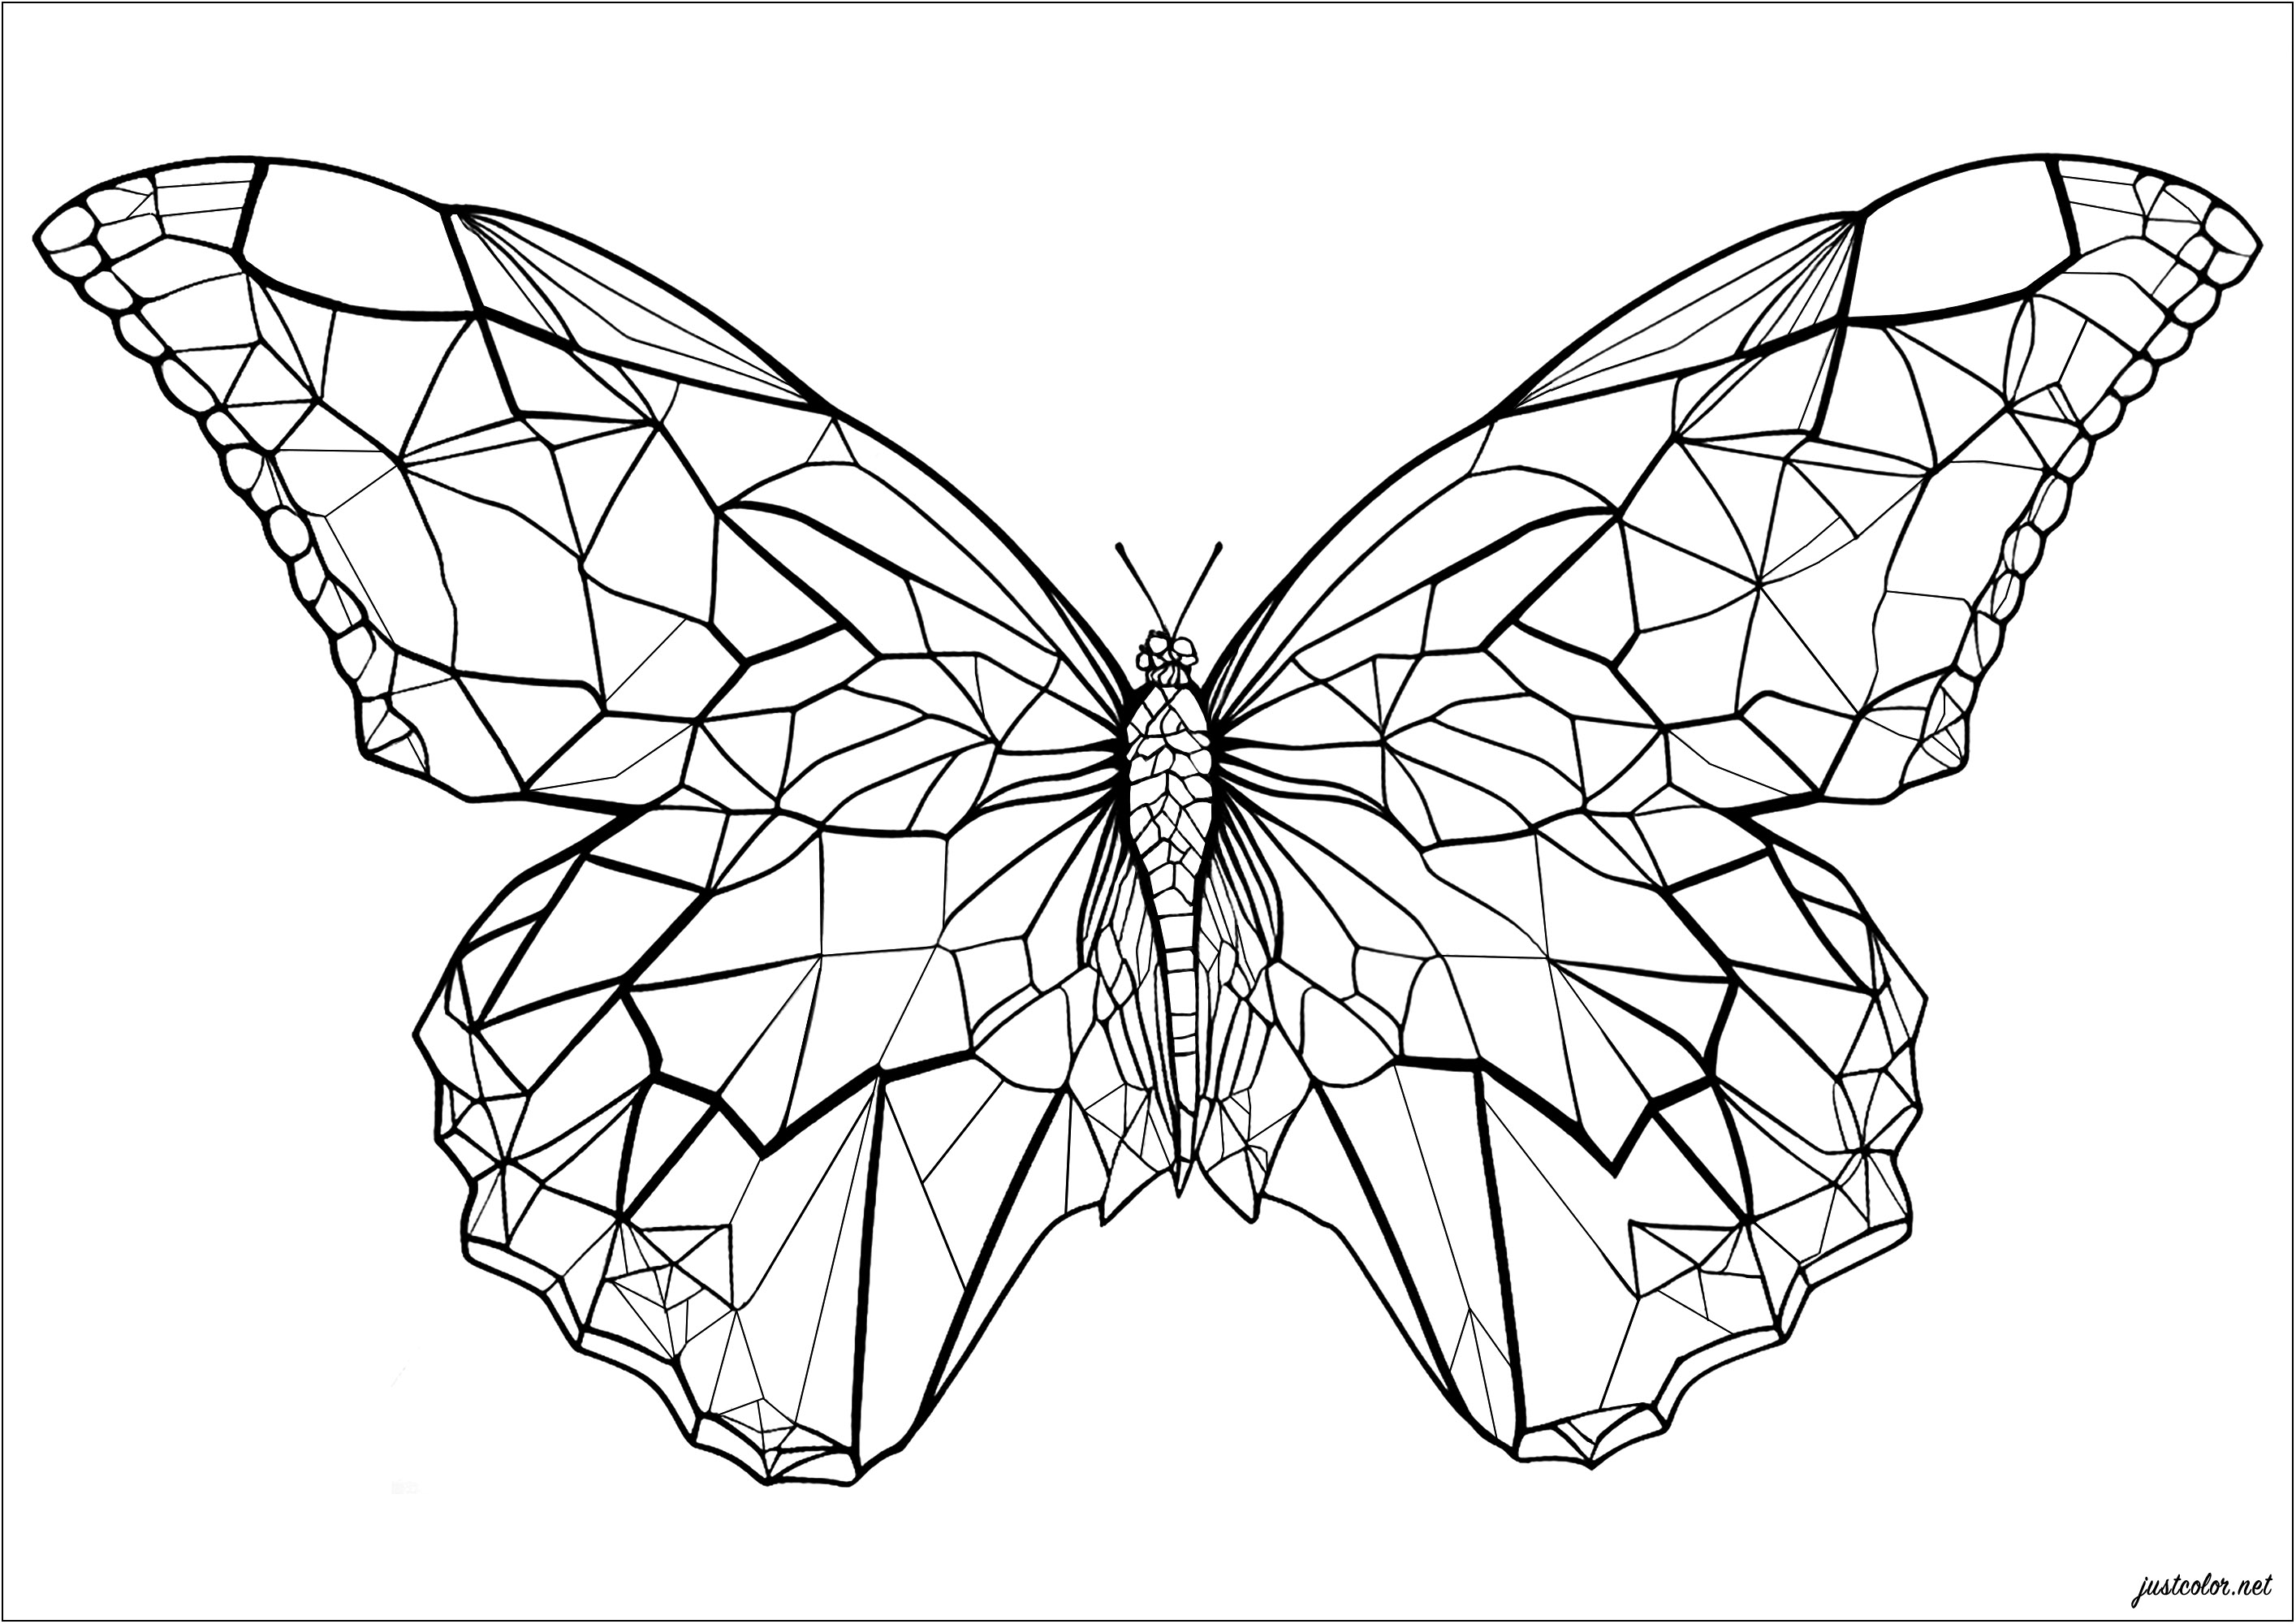 Una farfalla con ali angolari e geometriche. Colorate ogni forma geometrica delle ali di questa bellissima farfalla! Gradazioni di colori, colori dell'arcobaleno... Simmetria o meno... sta a voi scegliere il vostro stile, le possibilità sono infinite e il risultato sarà sicuramente bellissimo.